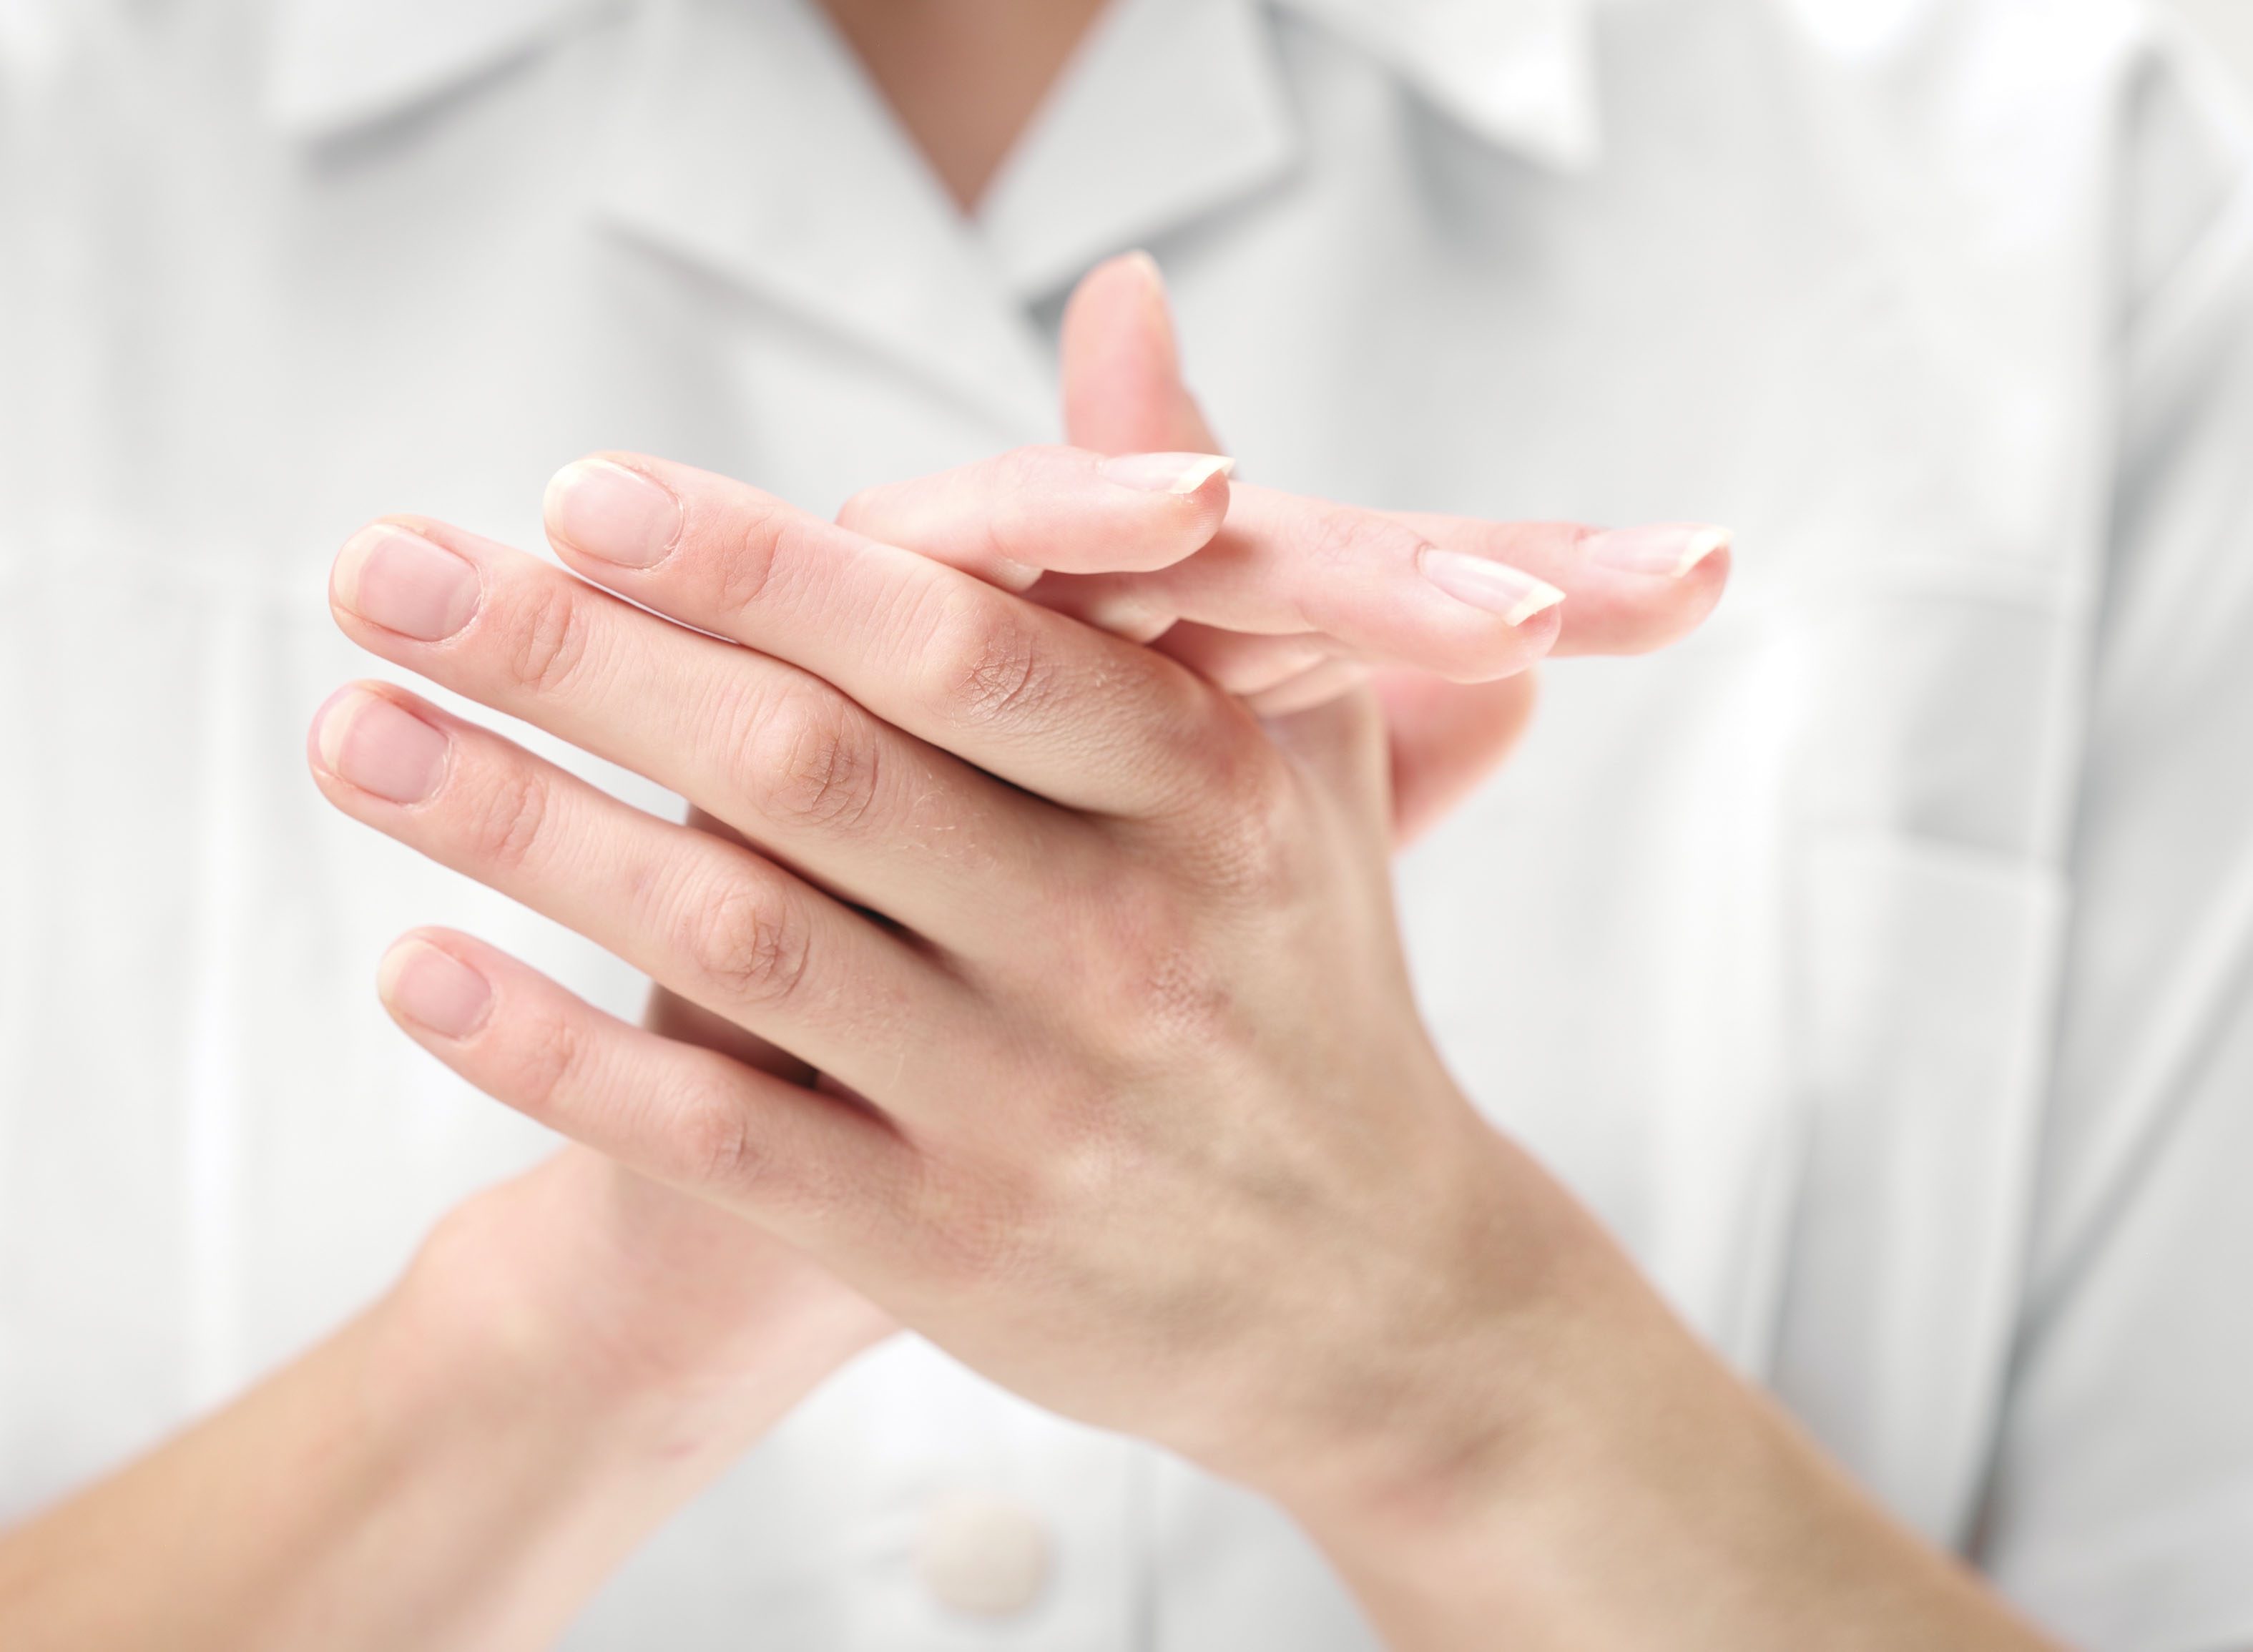 Die Hände stellen für das Personal die wichtigsten Werkzeuge im Praxis- oder Llinikalltag dar. Einen effektiven und einfachen Schutz bietet die korrekt durchgeführte Händedesinfektion. 